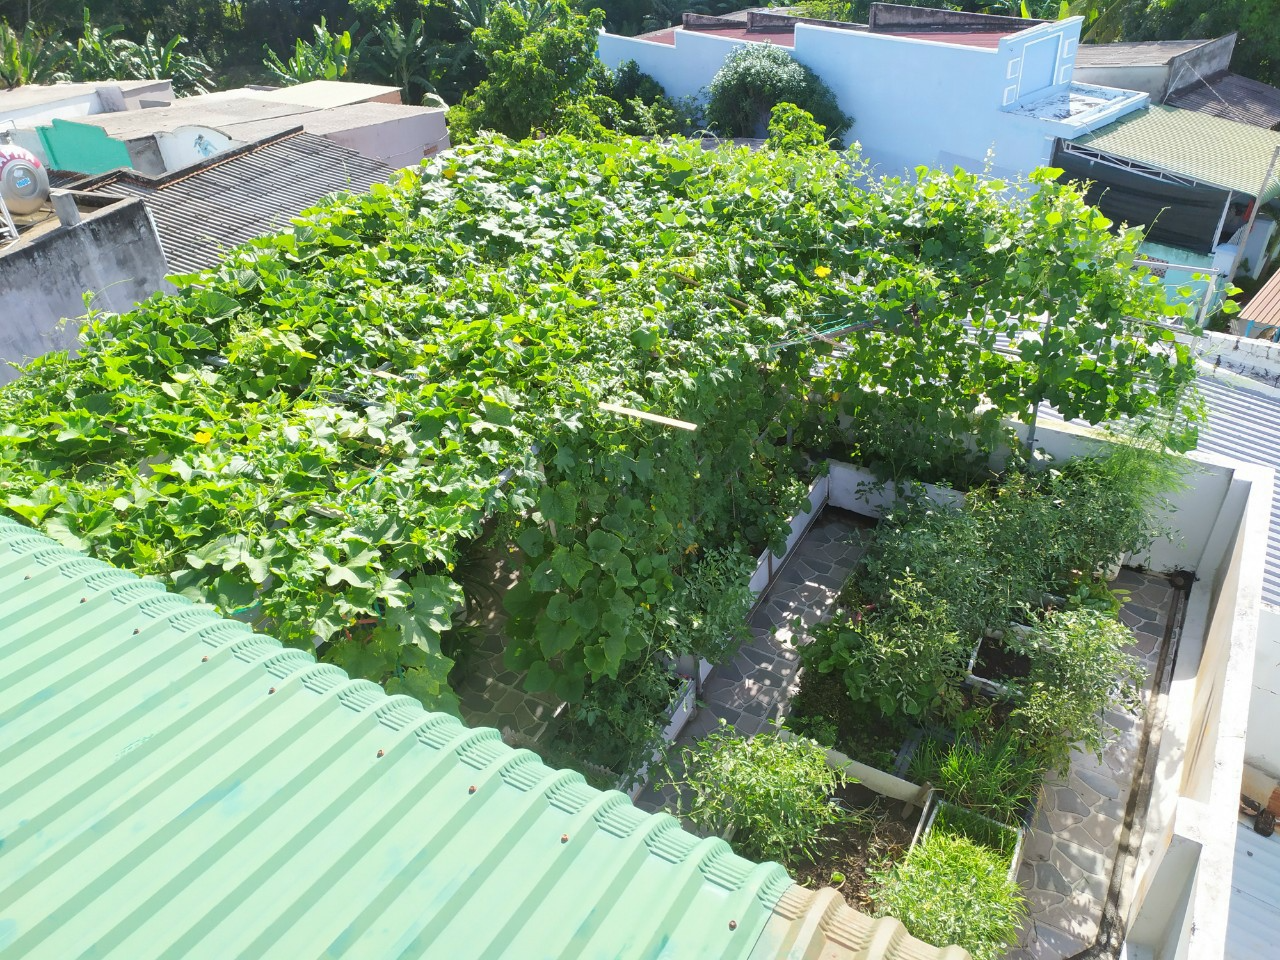 Khu vườn sân thượng 70m2 trĩu nặng rau quả từ căn nhà phố ở Bình Thuận - Ảnh 4.